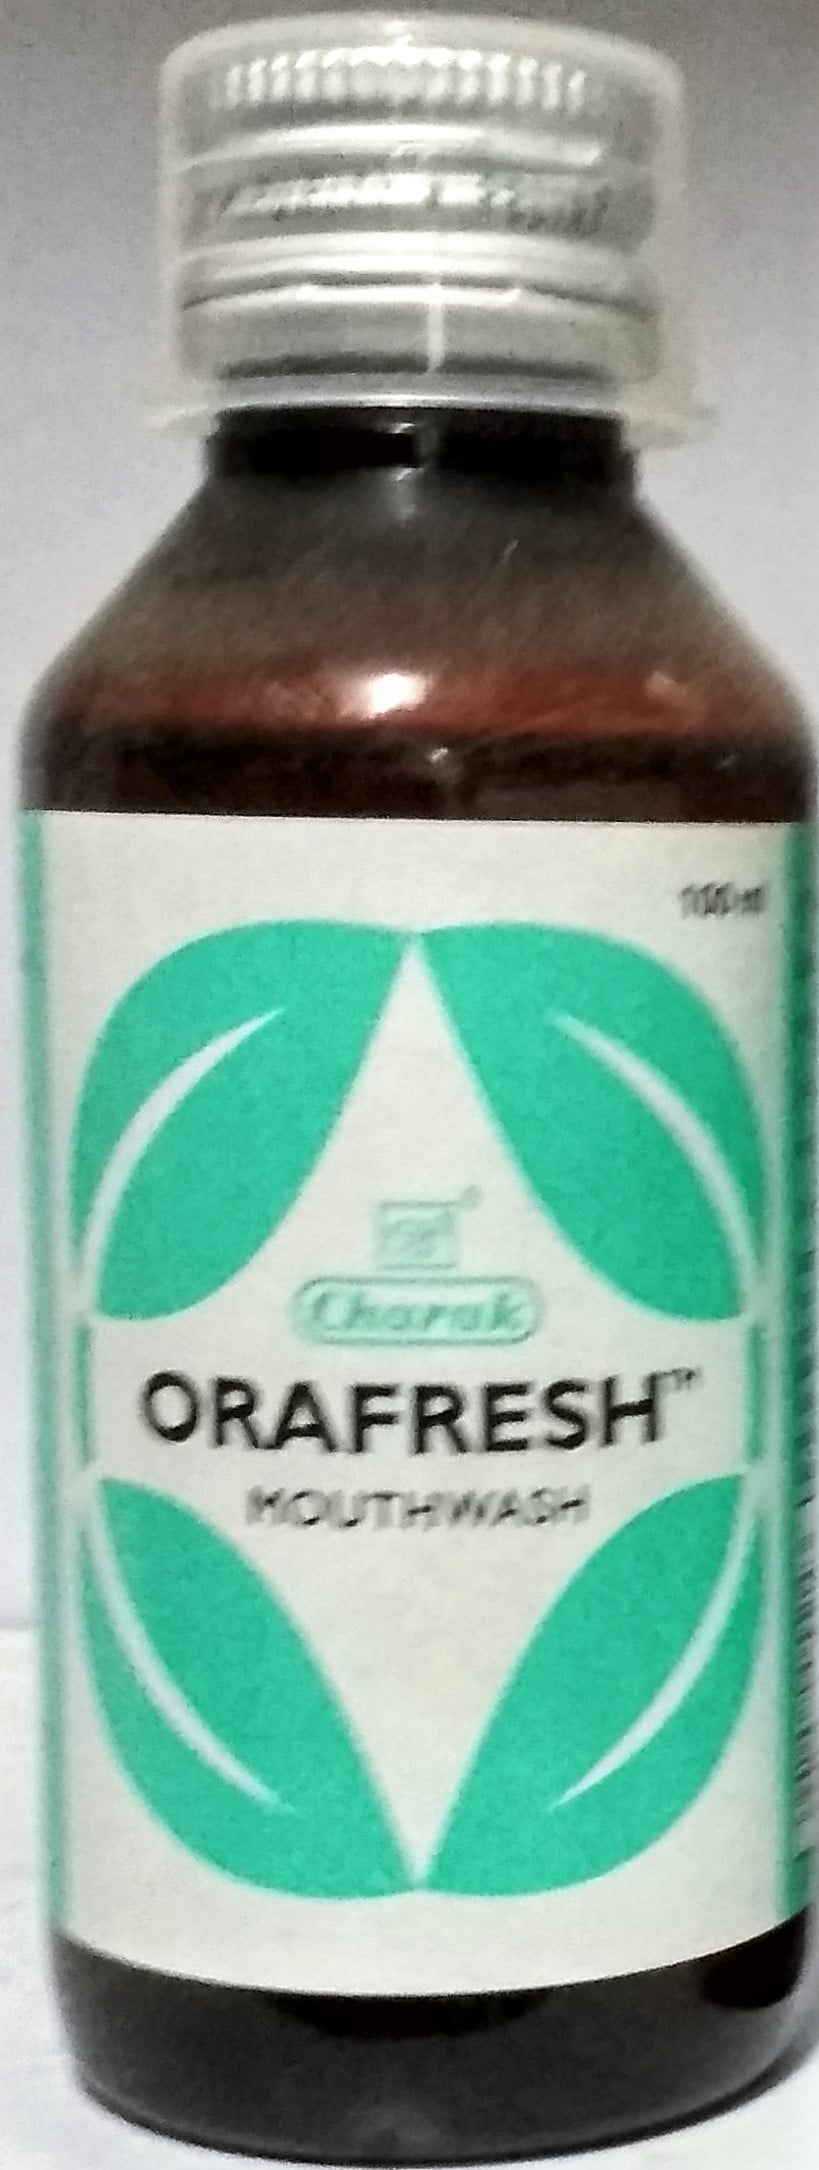 orafresh 100ml charak pharma mumbai